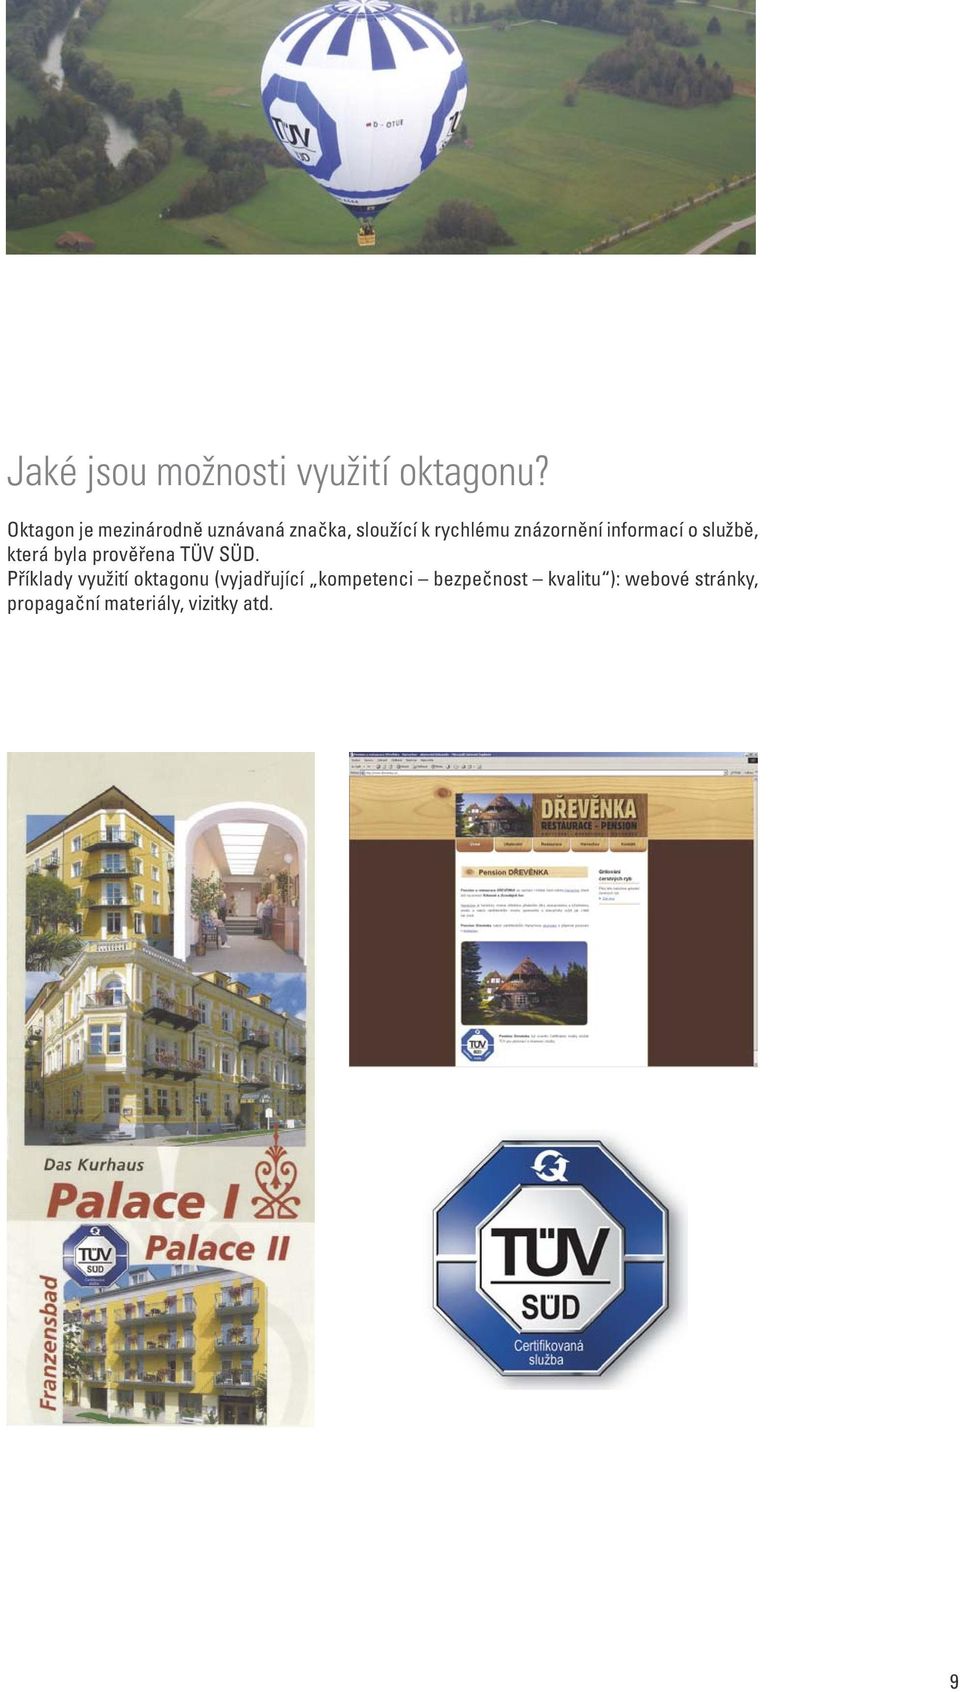 informací o službě, která byla prověřena TÜV SÜD.